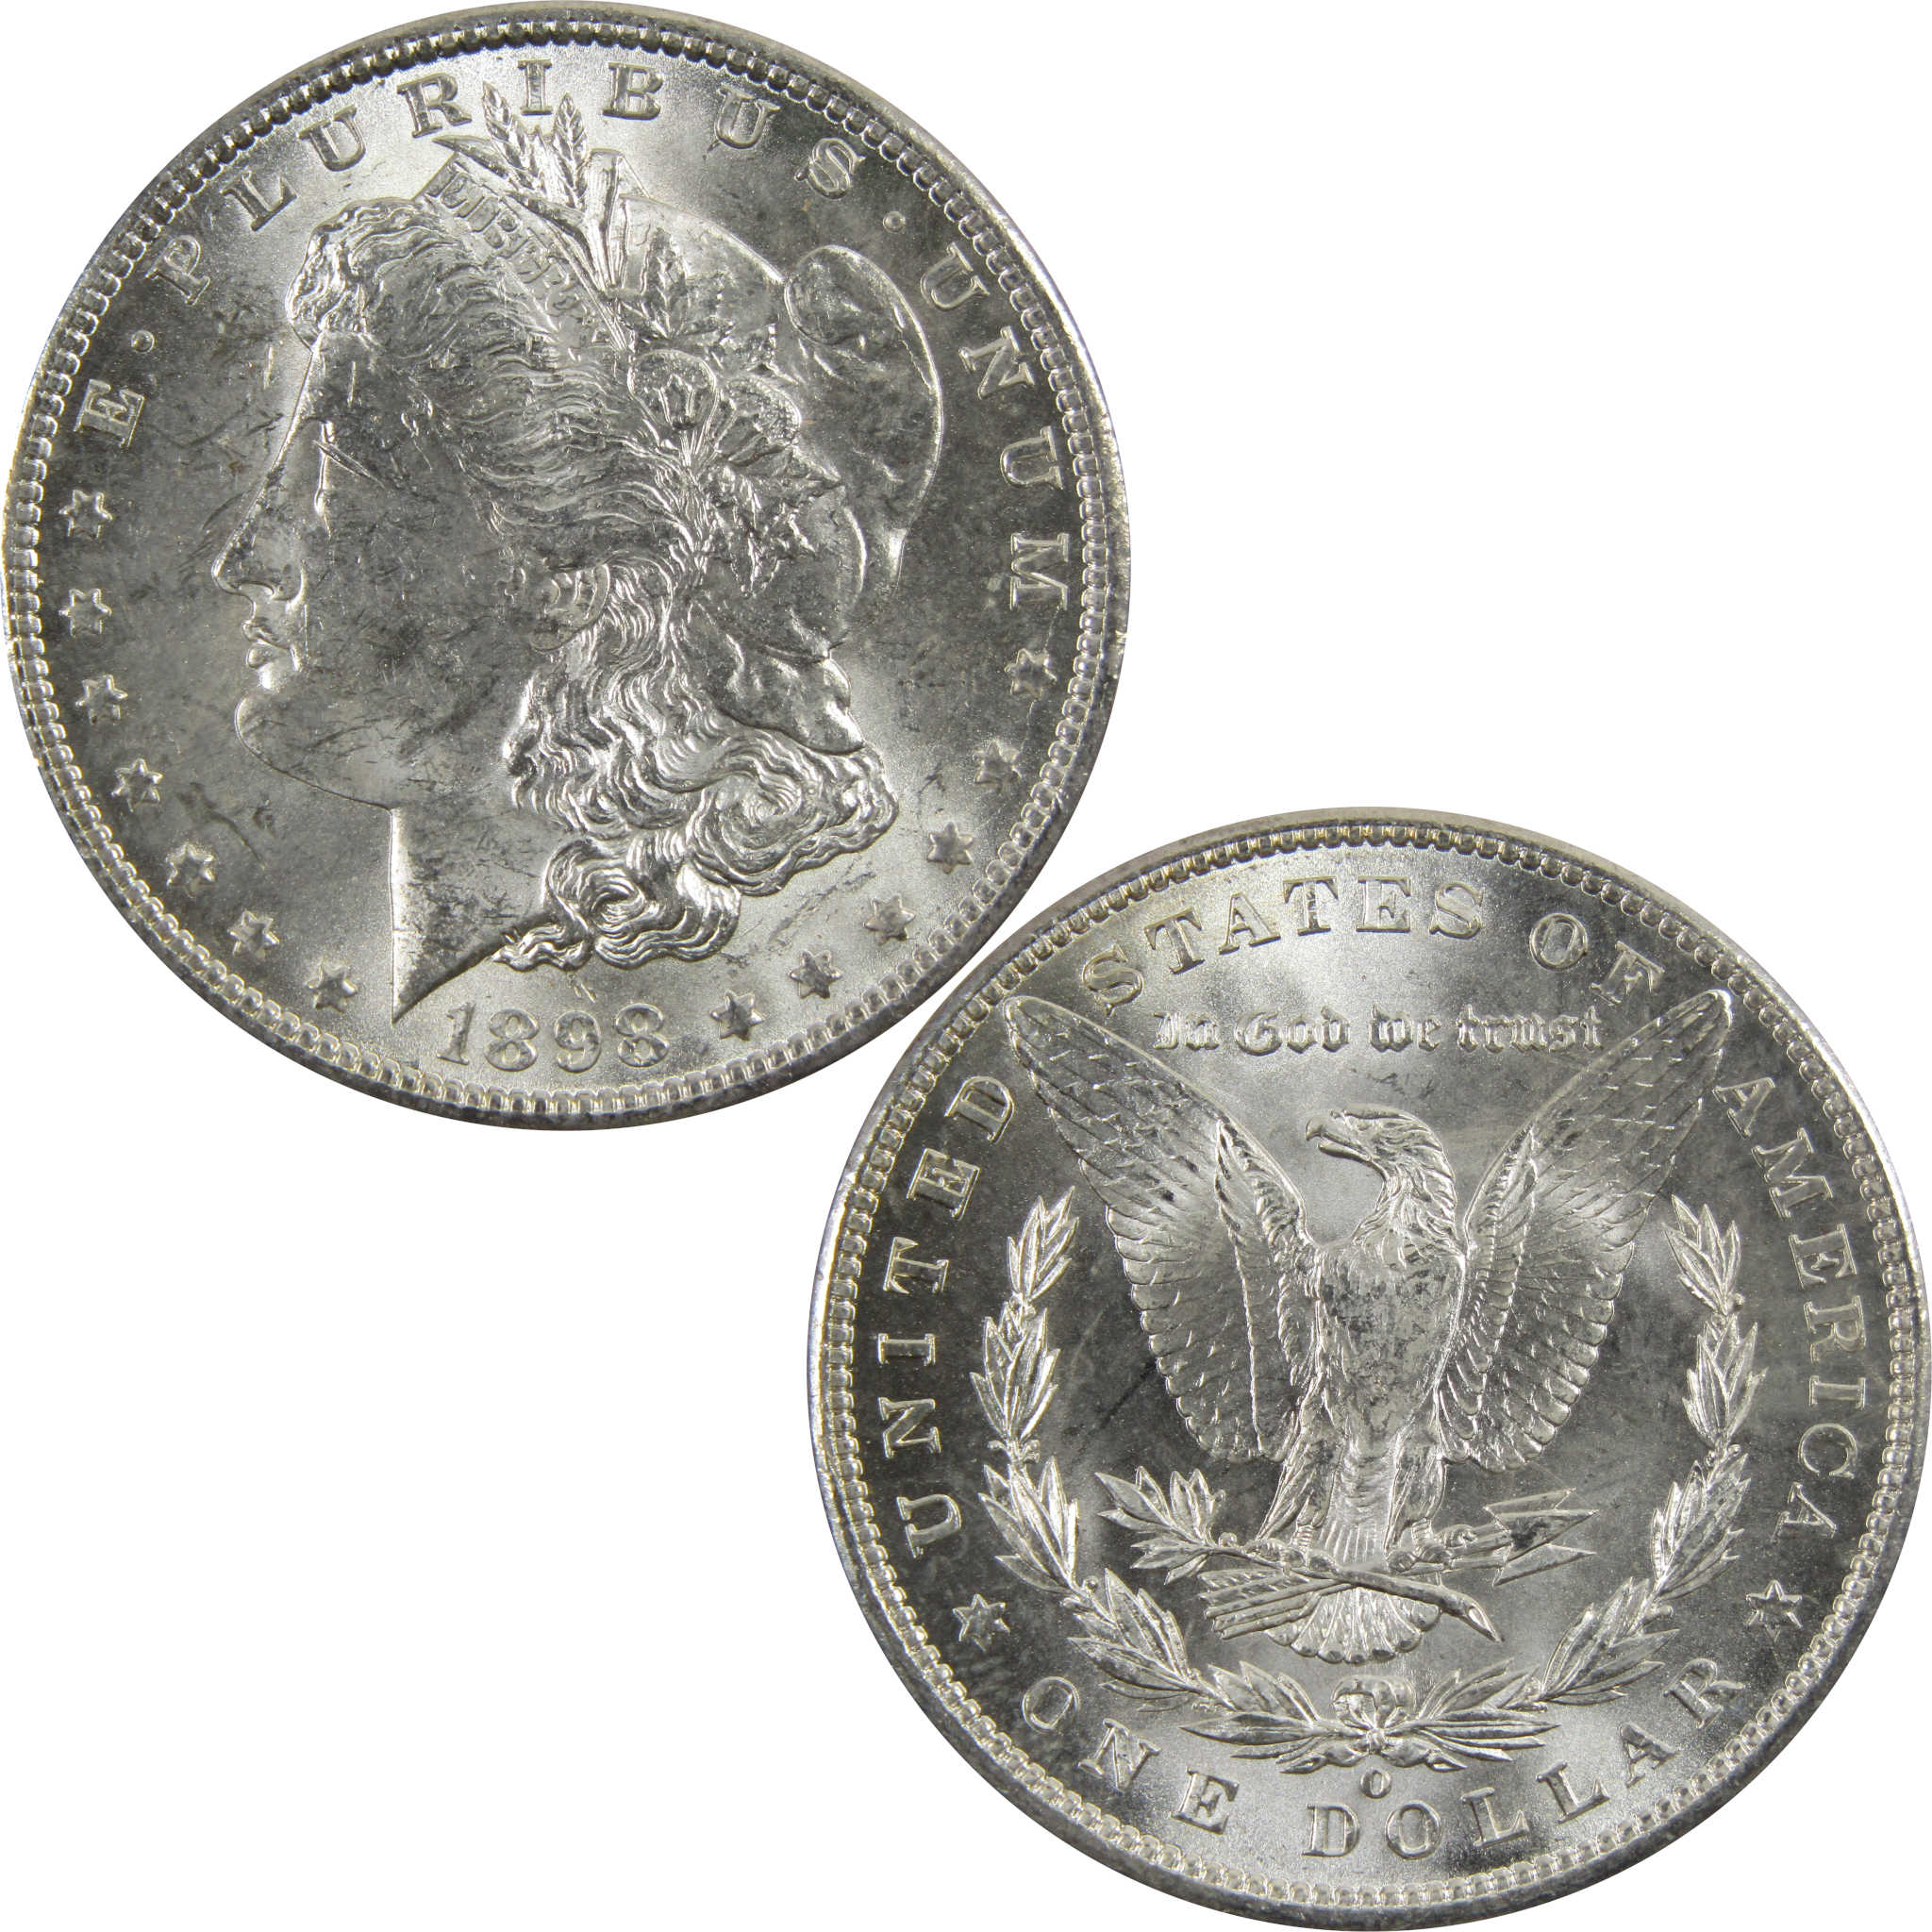 1898 O Morgan Dollar BU Uncirculated 90% Silver $1 Coin SKU:I5290 - Morgan coin - Morgan silver dollar - Morgan silver dollar for sale - Profile Coins &amp; Collectibles